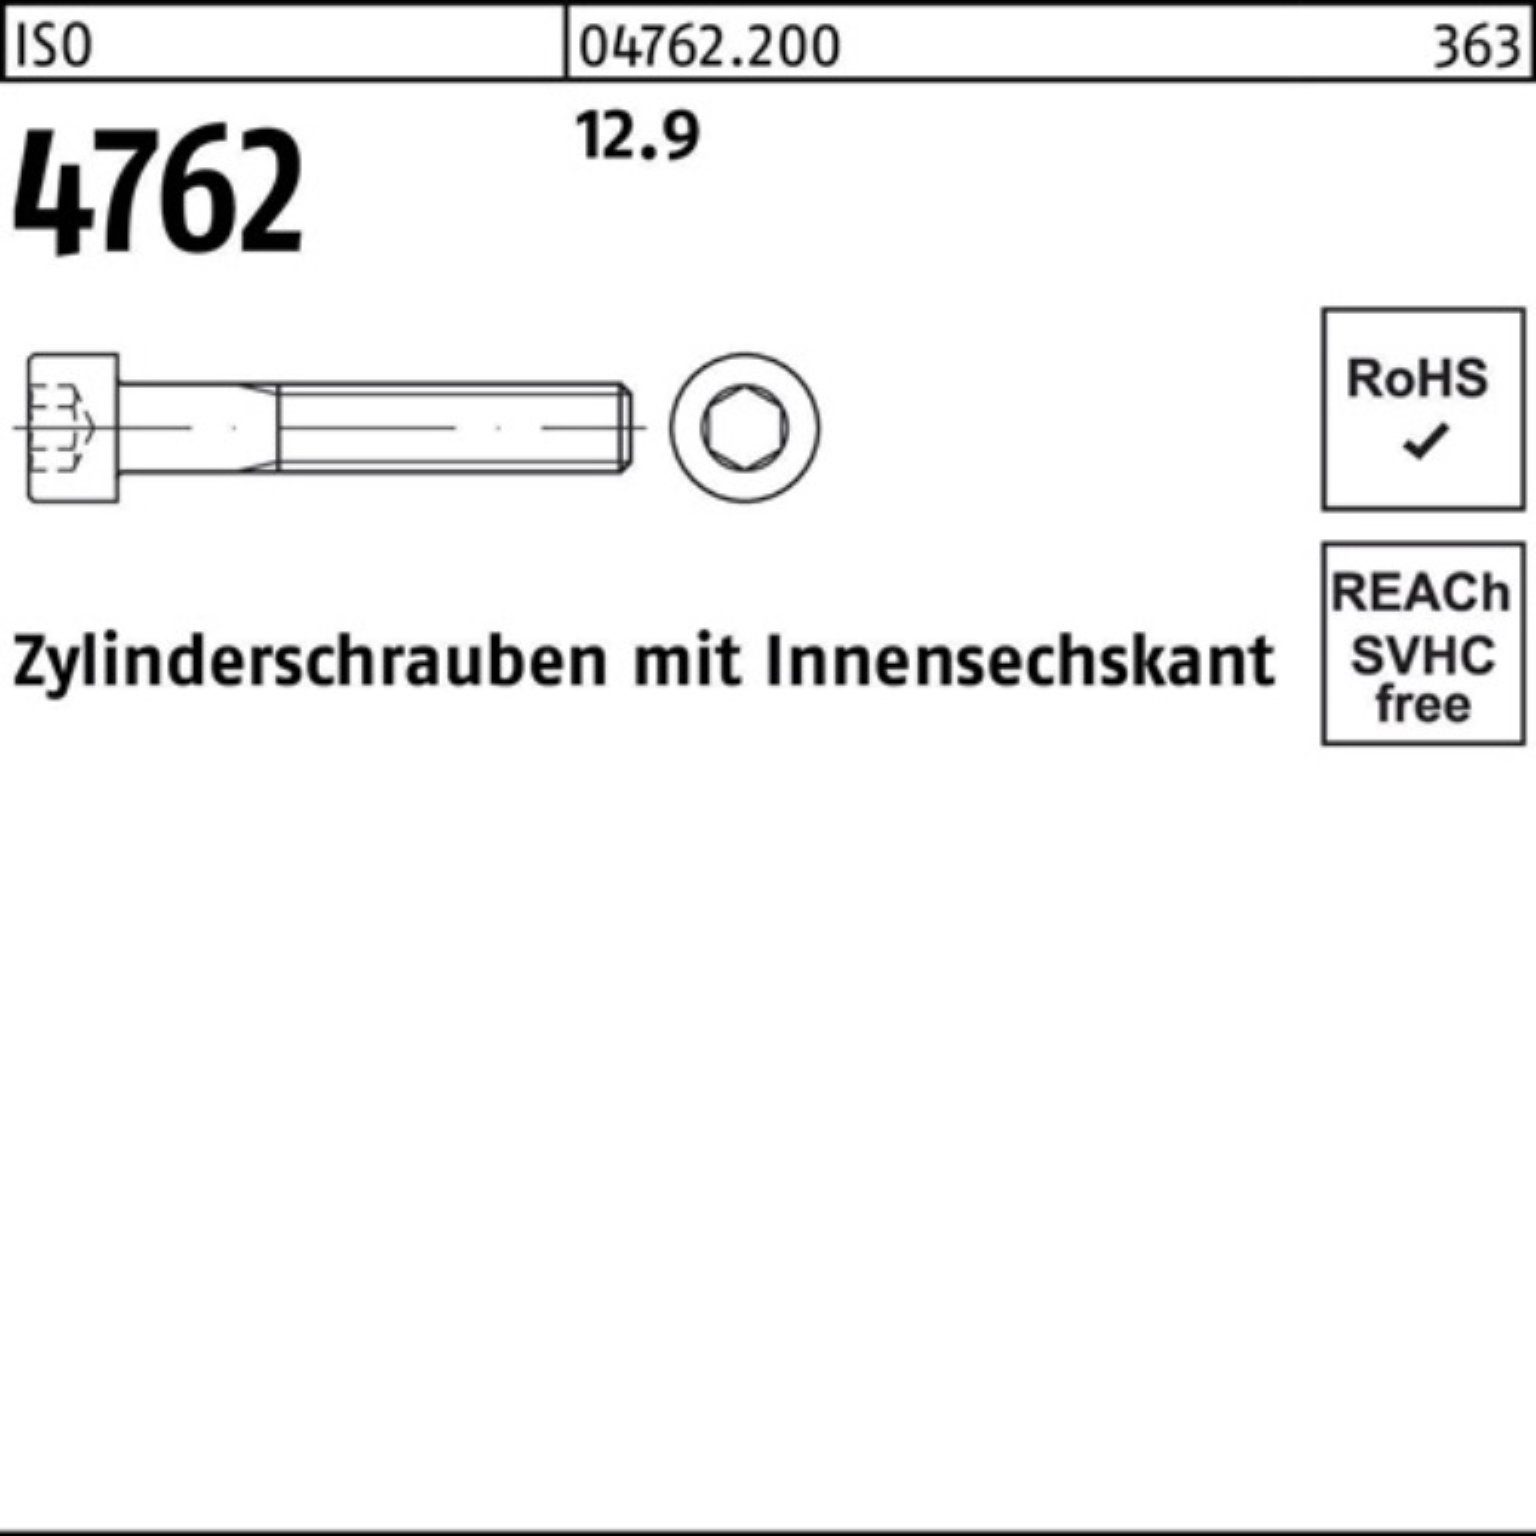 ISO Zylinderschraube 1 4762 Pack M42x 100er 12.9 Zylinderschraube Innen-6kt 190 Reyher Stück